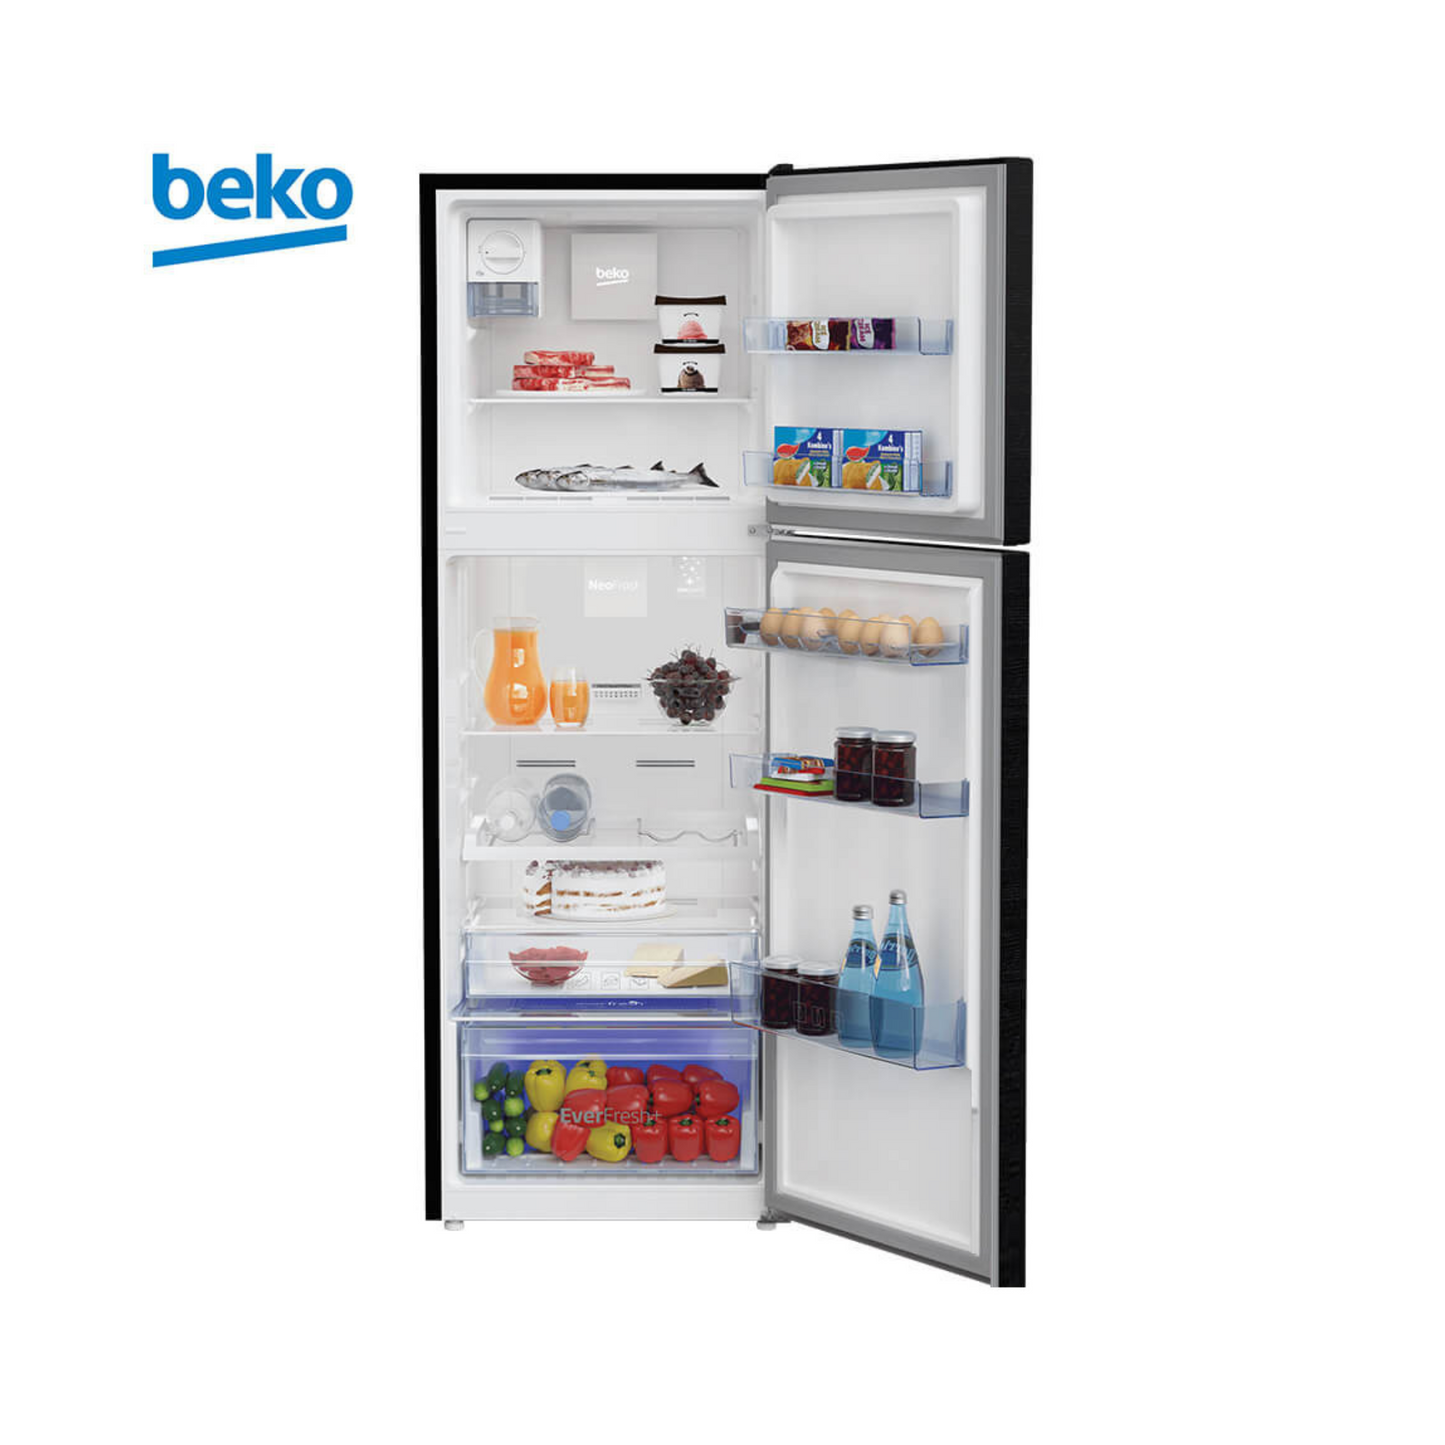 Beko 360L Double Door Refrigerator, RDNT360E20VZWB